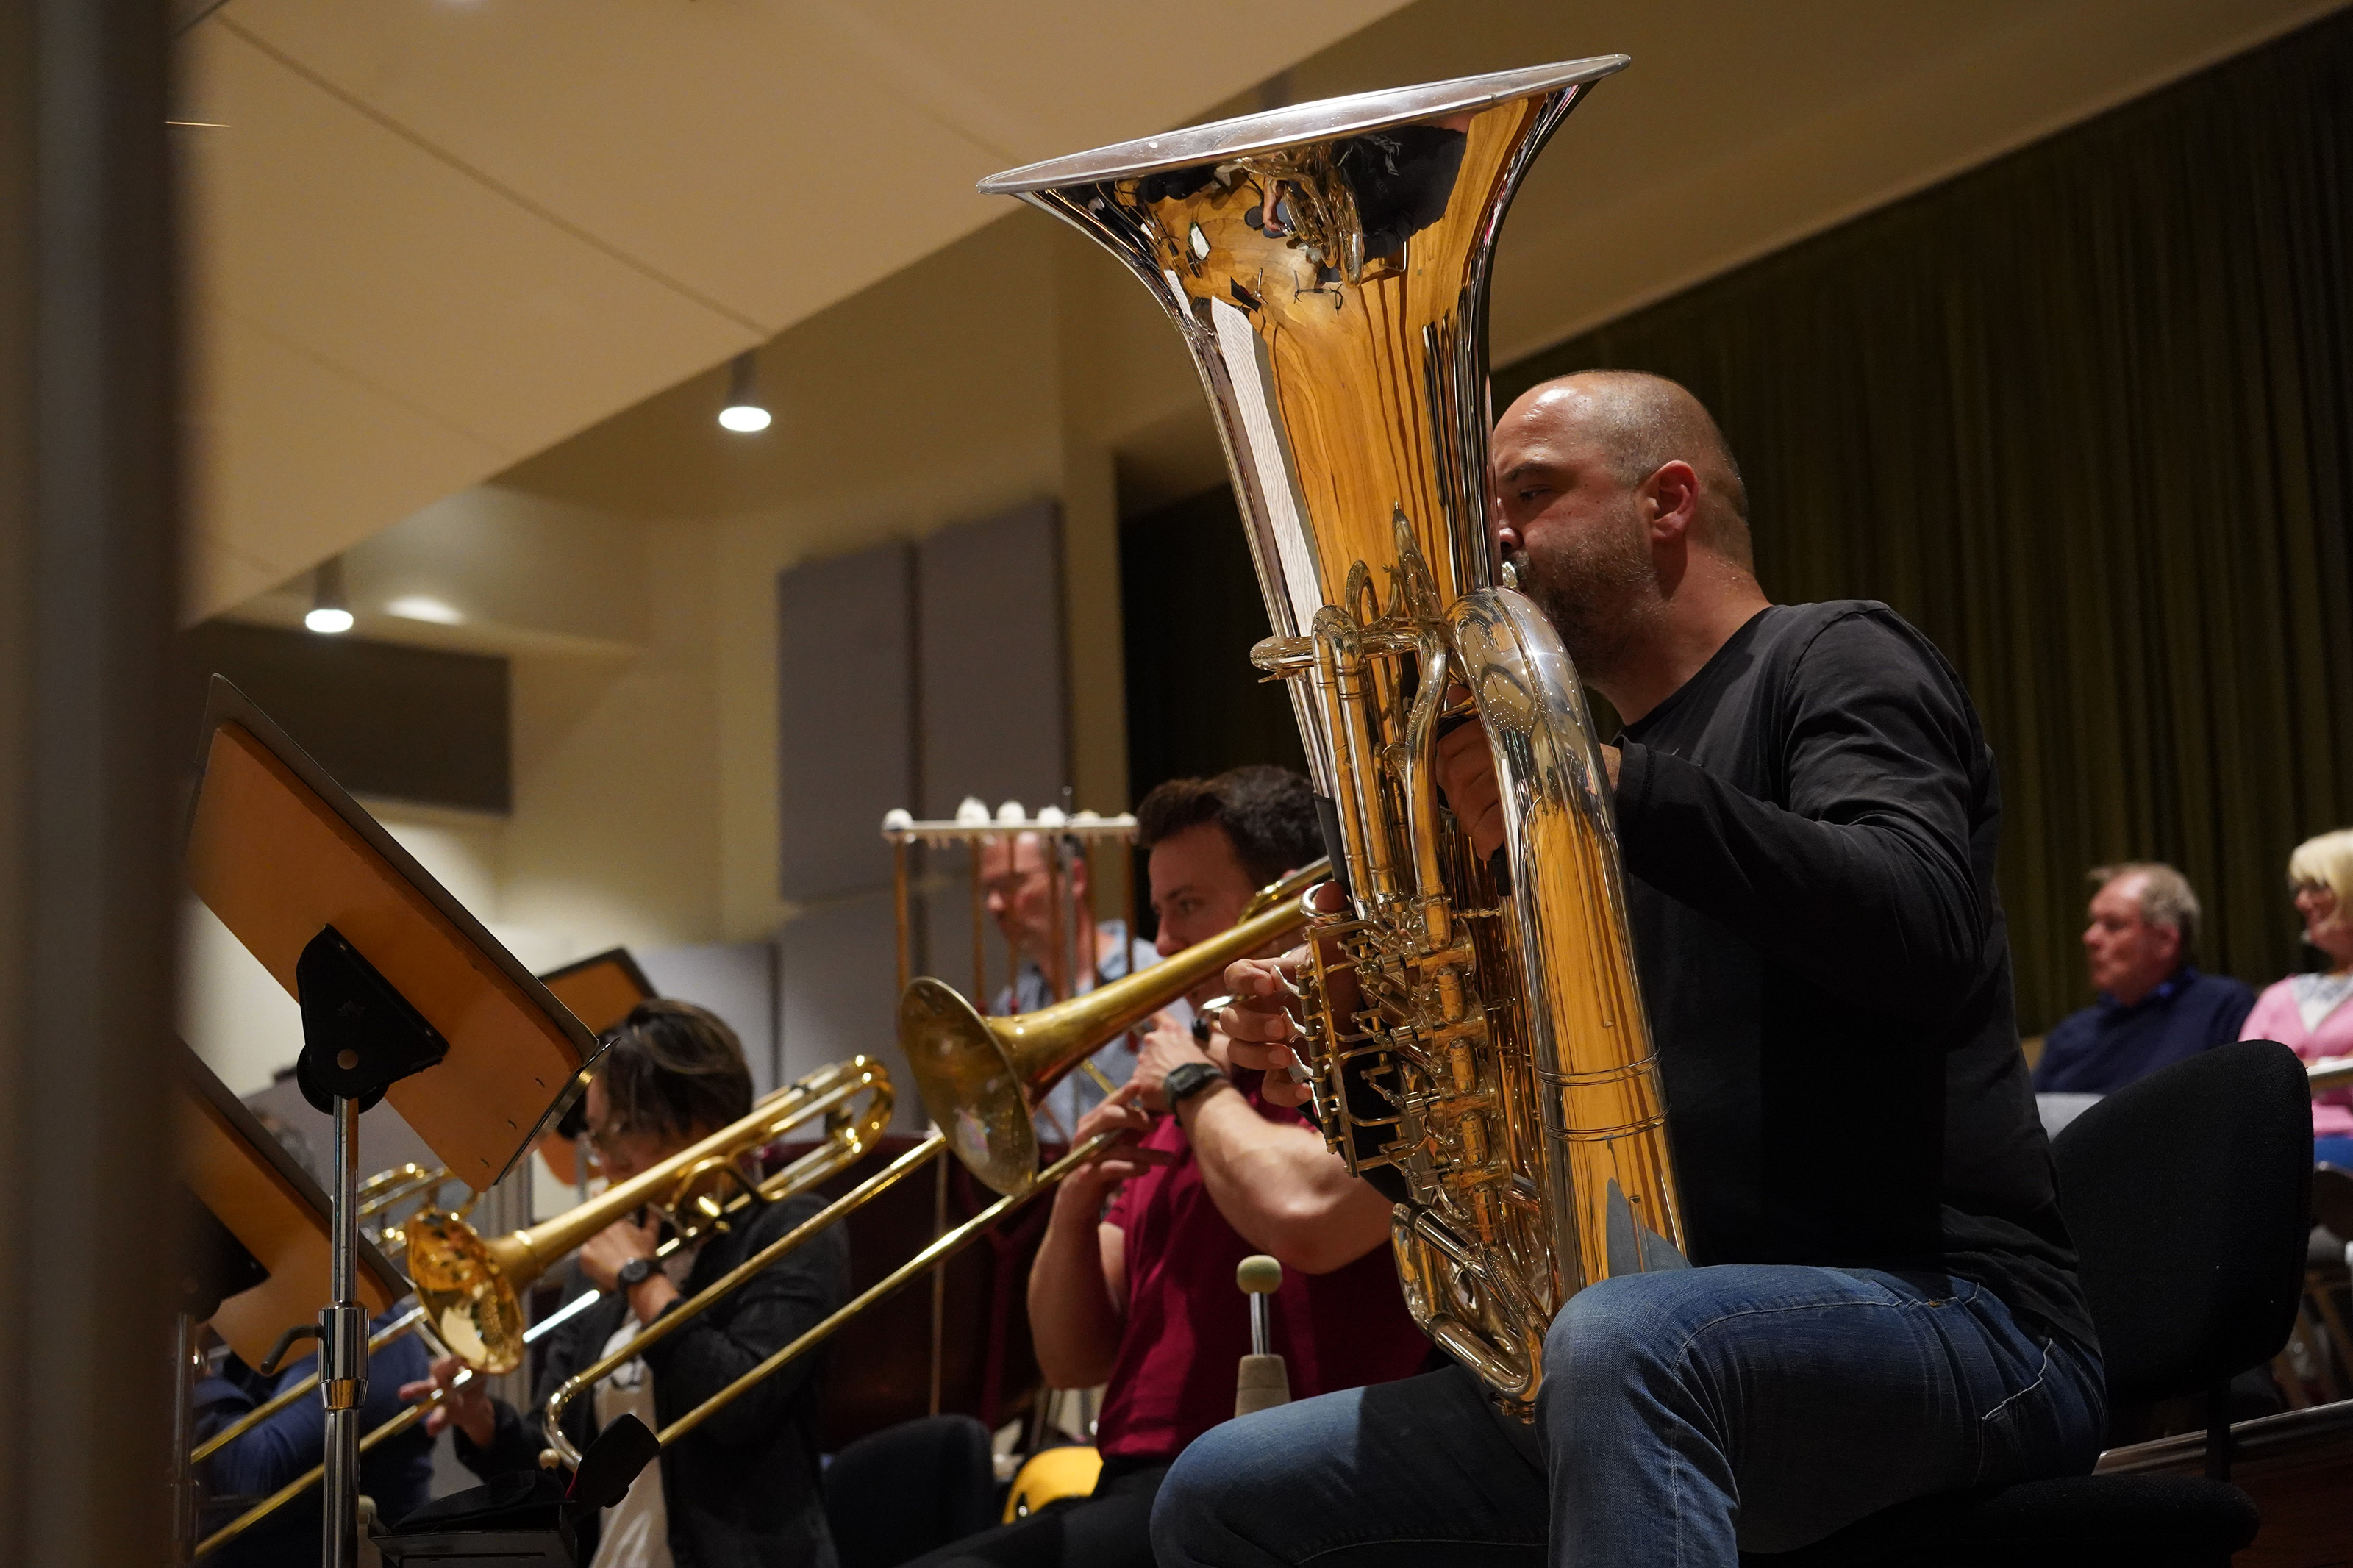 Die Tuba ist Teil der Posaunengruppe im Orchester. © NWD